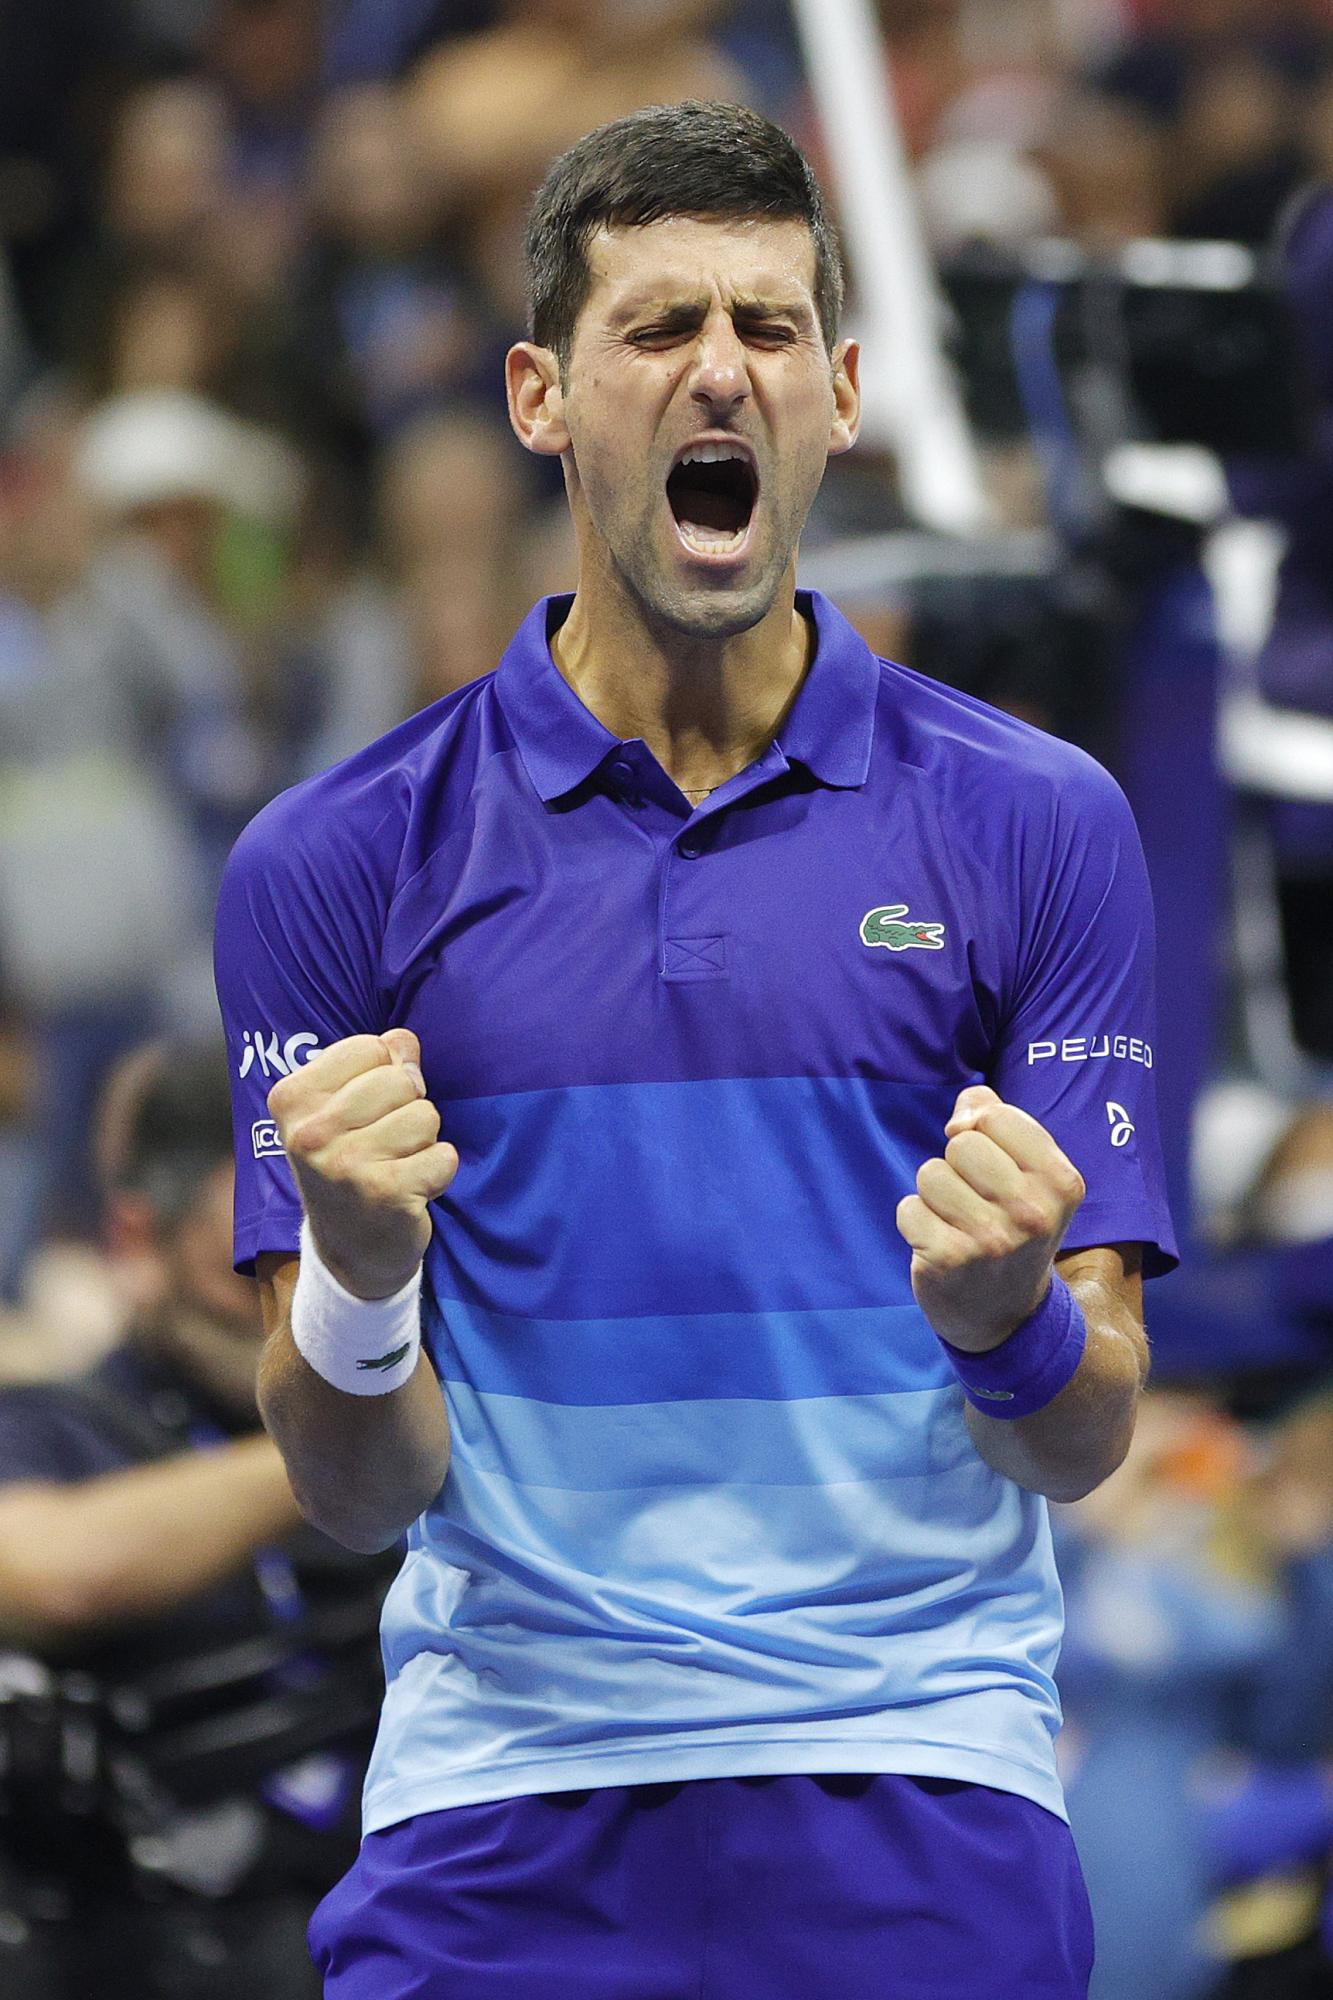 $!El sueño de hacer historia sobrevive: Djokovic vence a Zverev en cinco sets